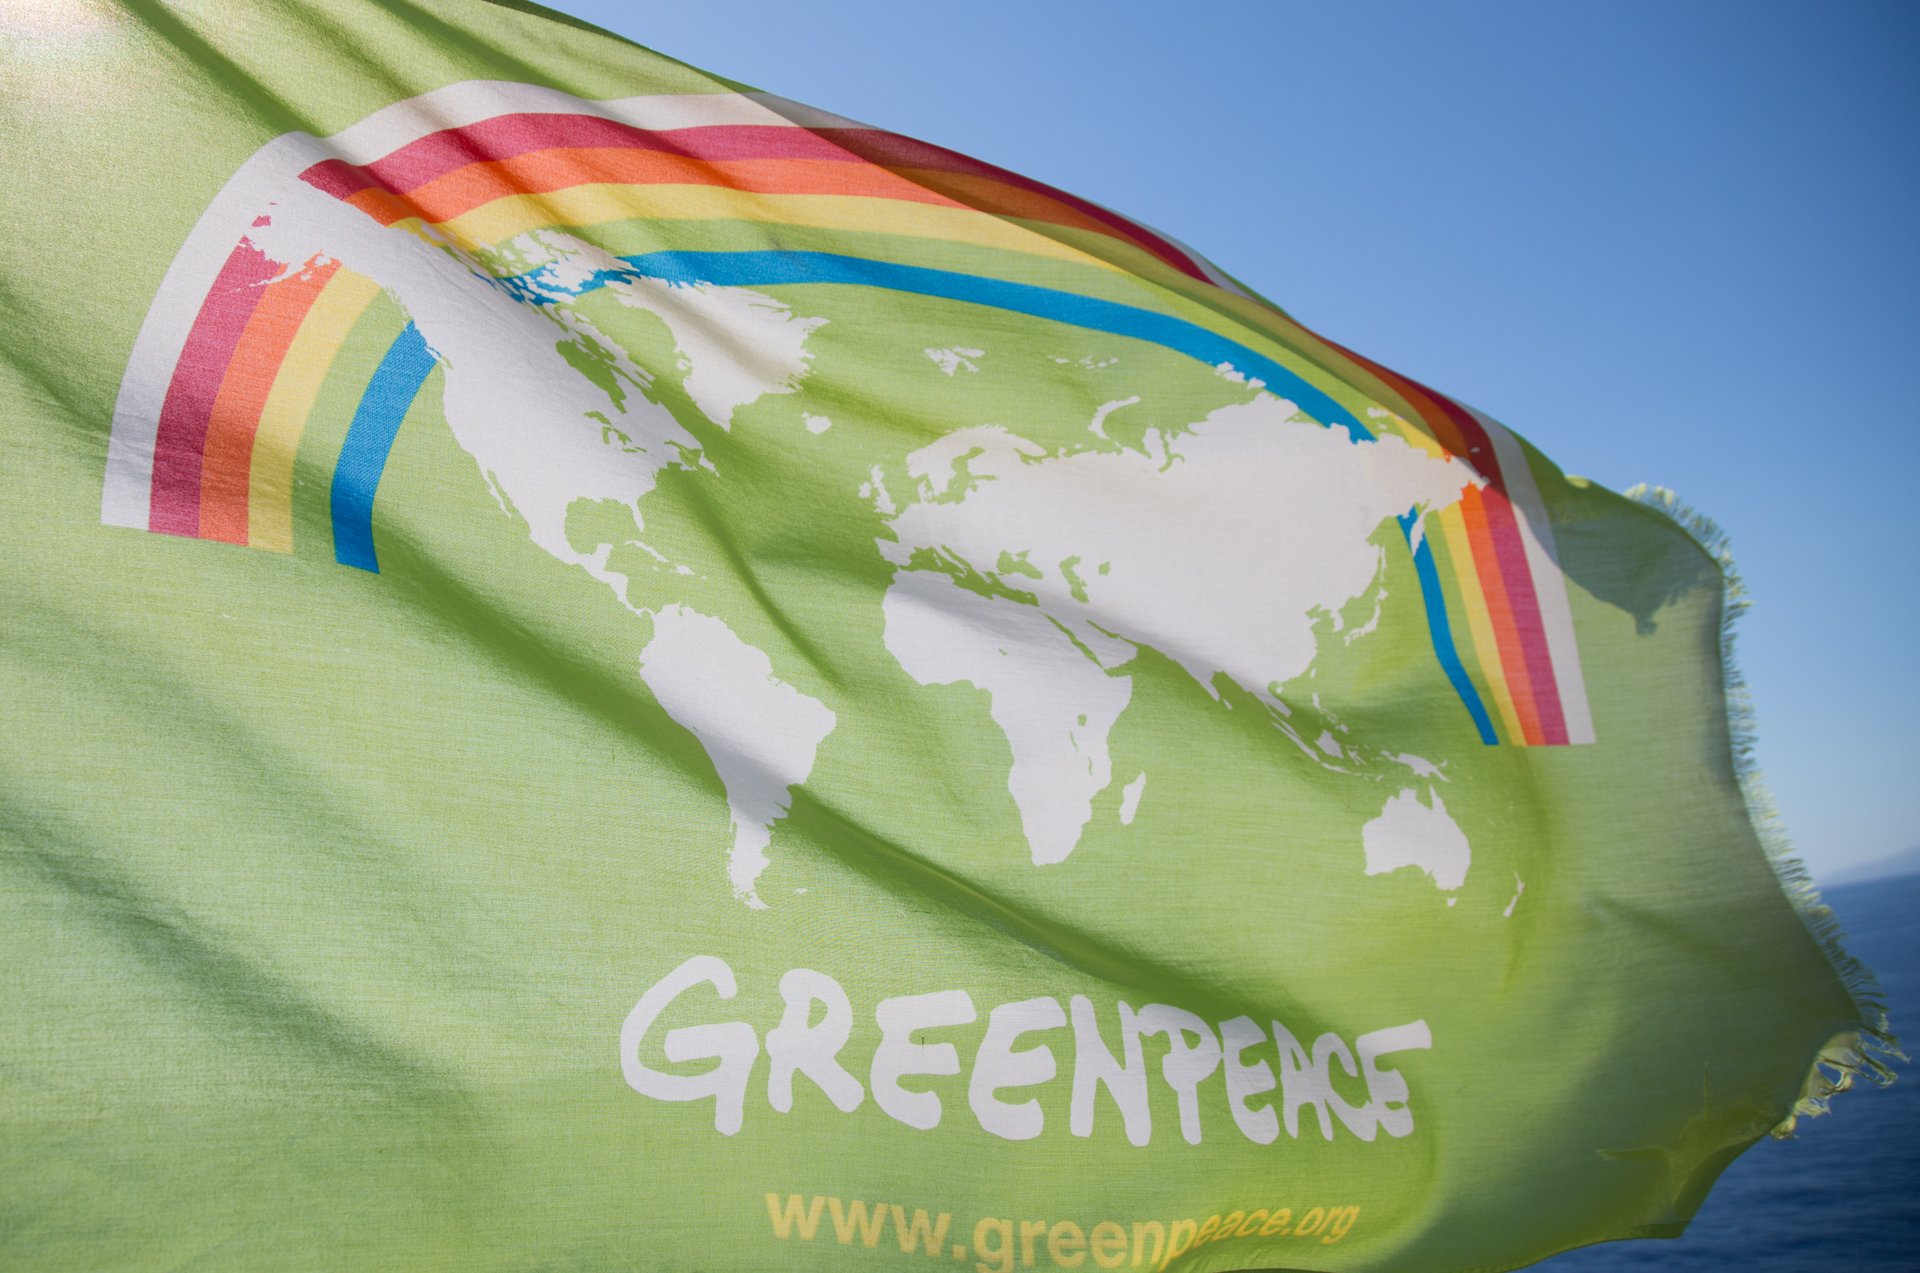 Greenpeace: Λεηλατούνται οι αλιευτικοί πόροι στην Αφρική για παραγωγή ιχθυέλαιου και ιχθυάλευρου